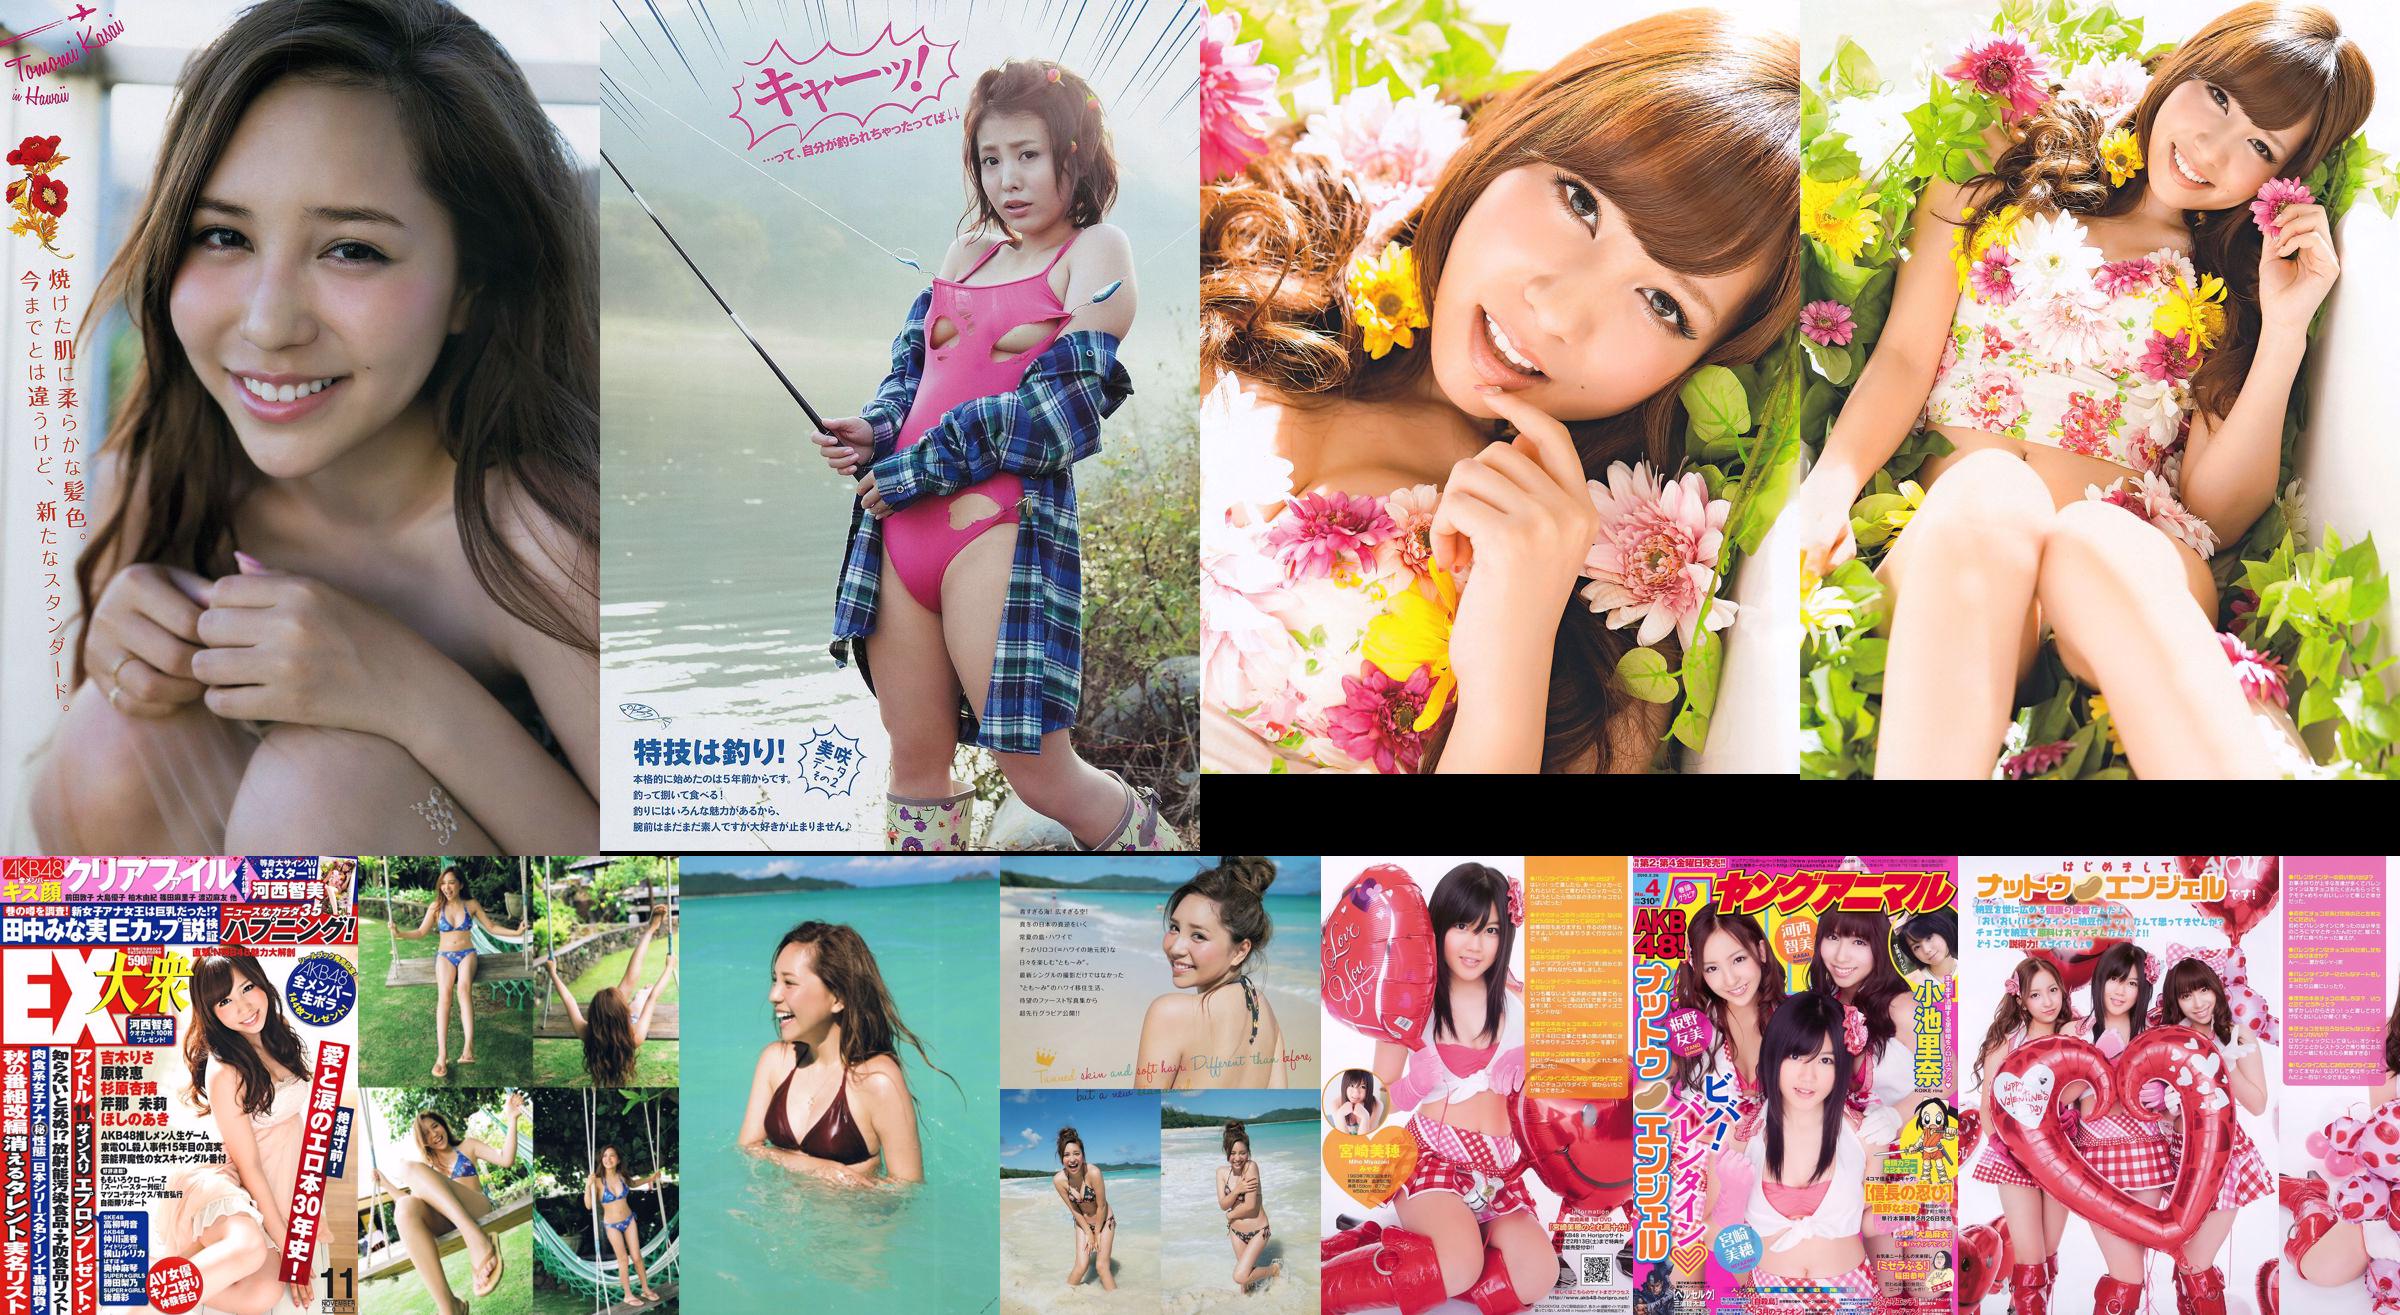 [Young Magazine] Tomomi Kasai Misaki Yumoto 2014 No.08 Photograph No.367db6 Page 1